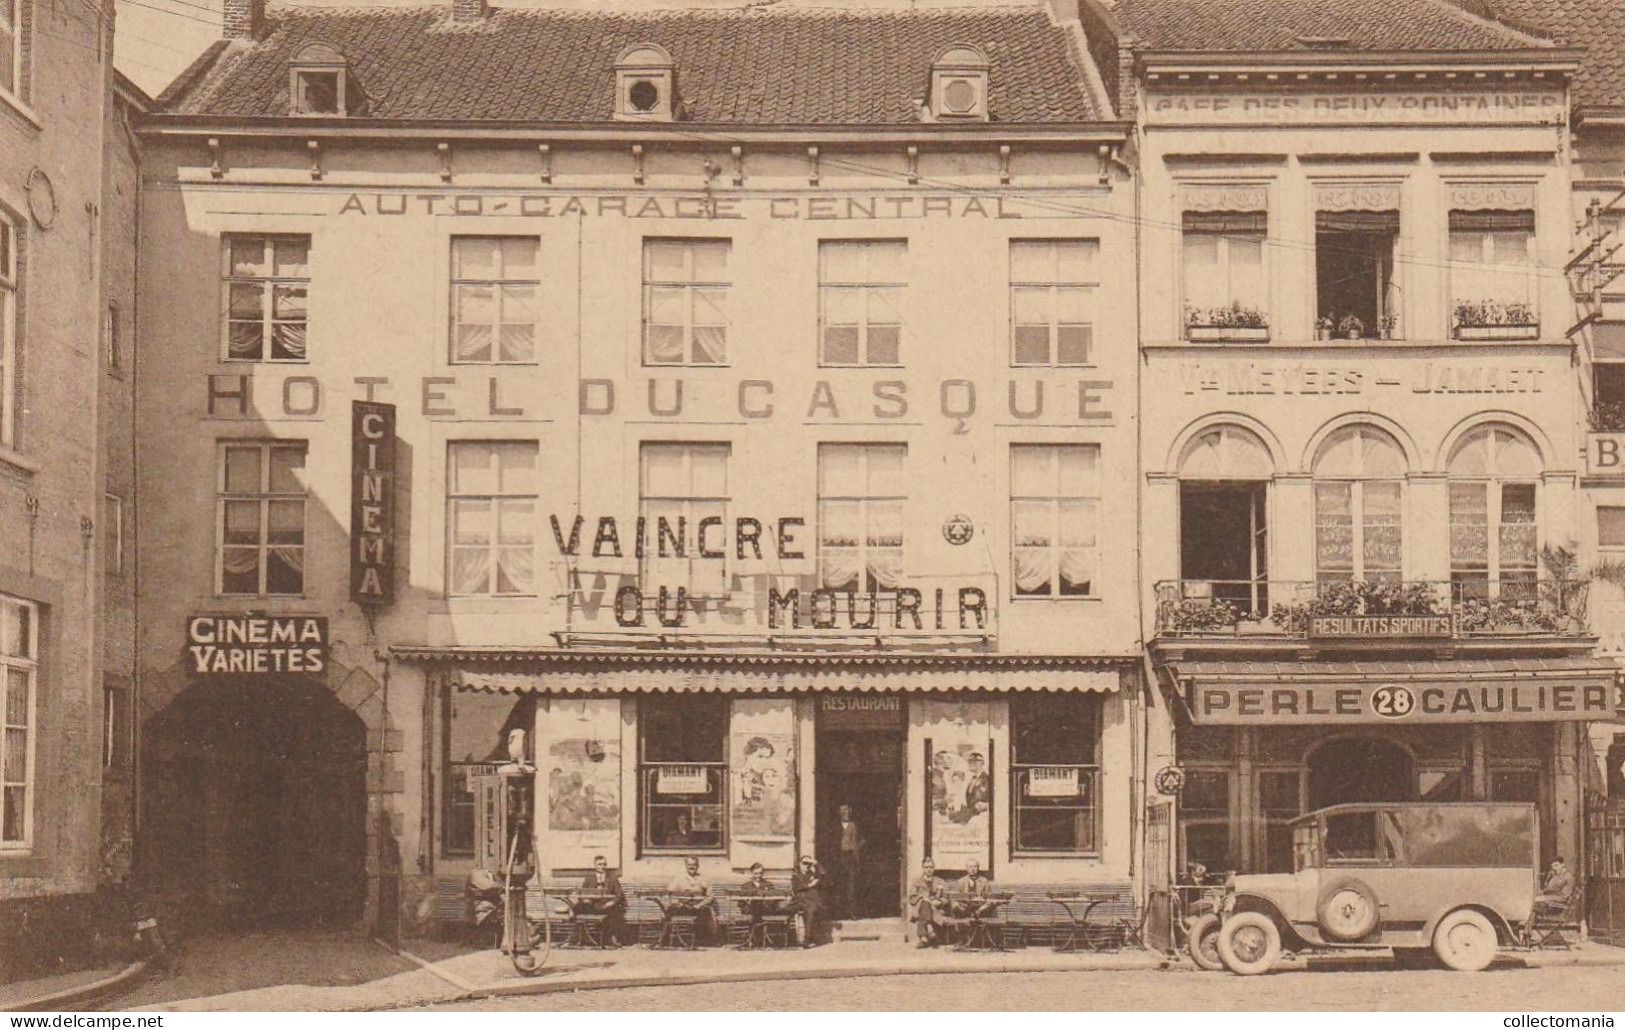 2 Oude Postkaarten Tongeren Hotel Du Casque  Garage Central Cinéma Varietés   Café Des Deux Fontaines  Vve Meyers  1929 - Tongeren